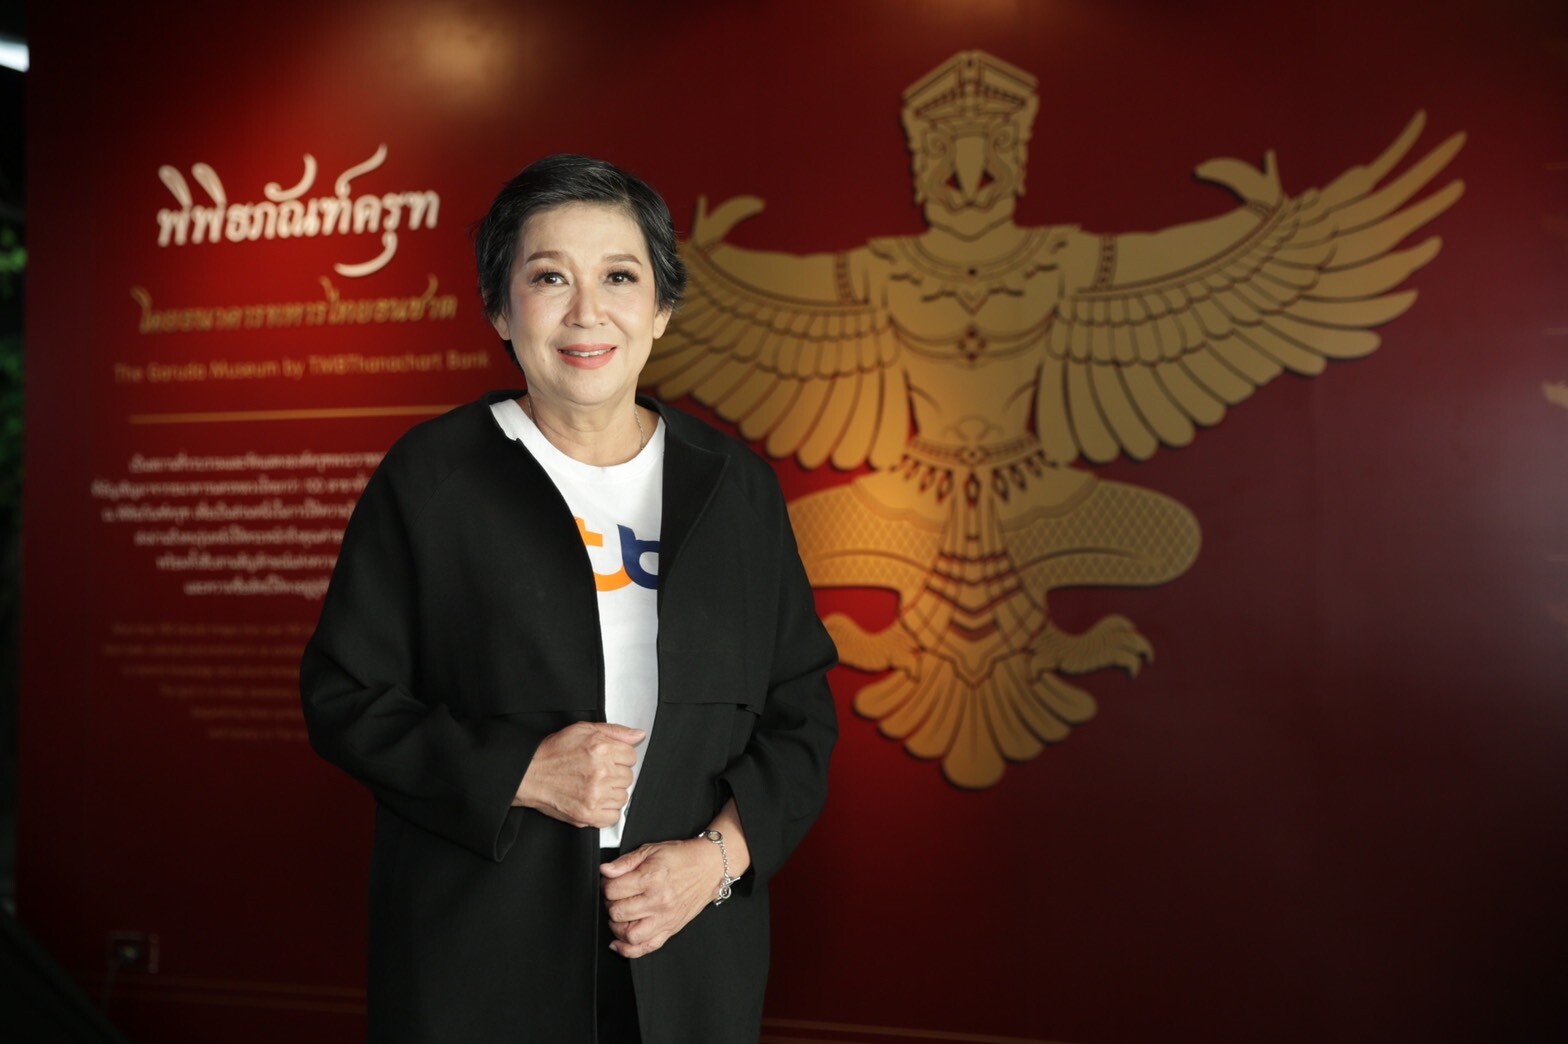 ทีเอ็มบีธนชาต เปิด "พิพิธภัณฑ์ครุฑ" แห่งแรกและแห่งเดียวในอาเซียนอย่างเป็นทางการ จุดประกายแหล่งเรียนรู้ ต่อยอดการอนุรักษ์ศิลปวัฒนธรรมไทยอย่างยั่งยืน